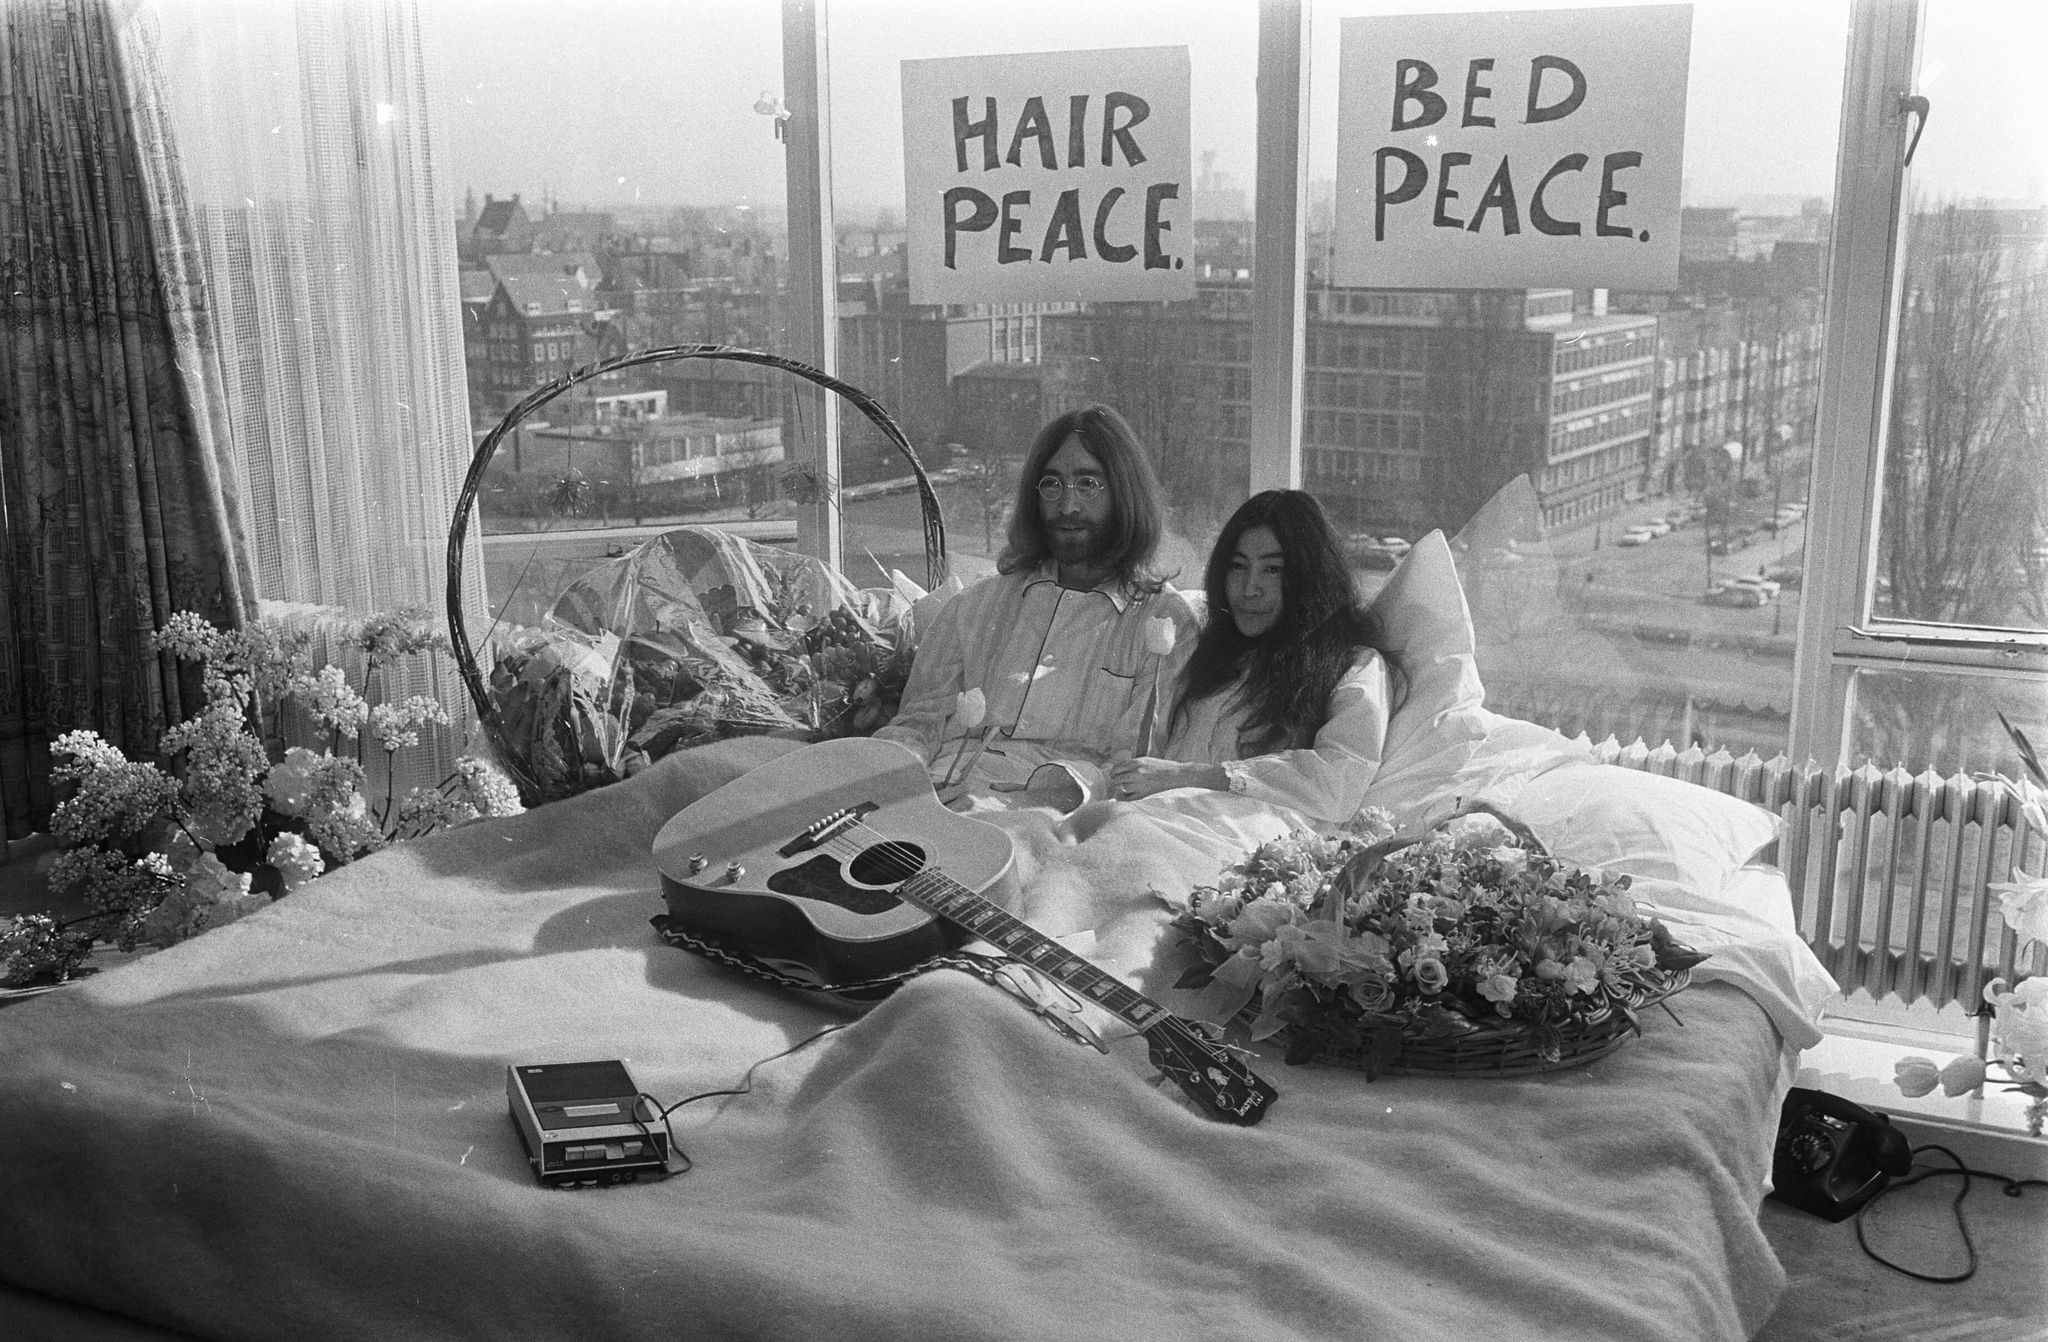 Джон Леннон и Йоко Оно в Амстердаме, 1969 год. В рамках акции «В постели за мир» они протестовали против войны во Вьетнаме. Фото: wikipedia.org